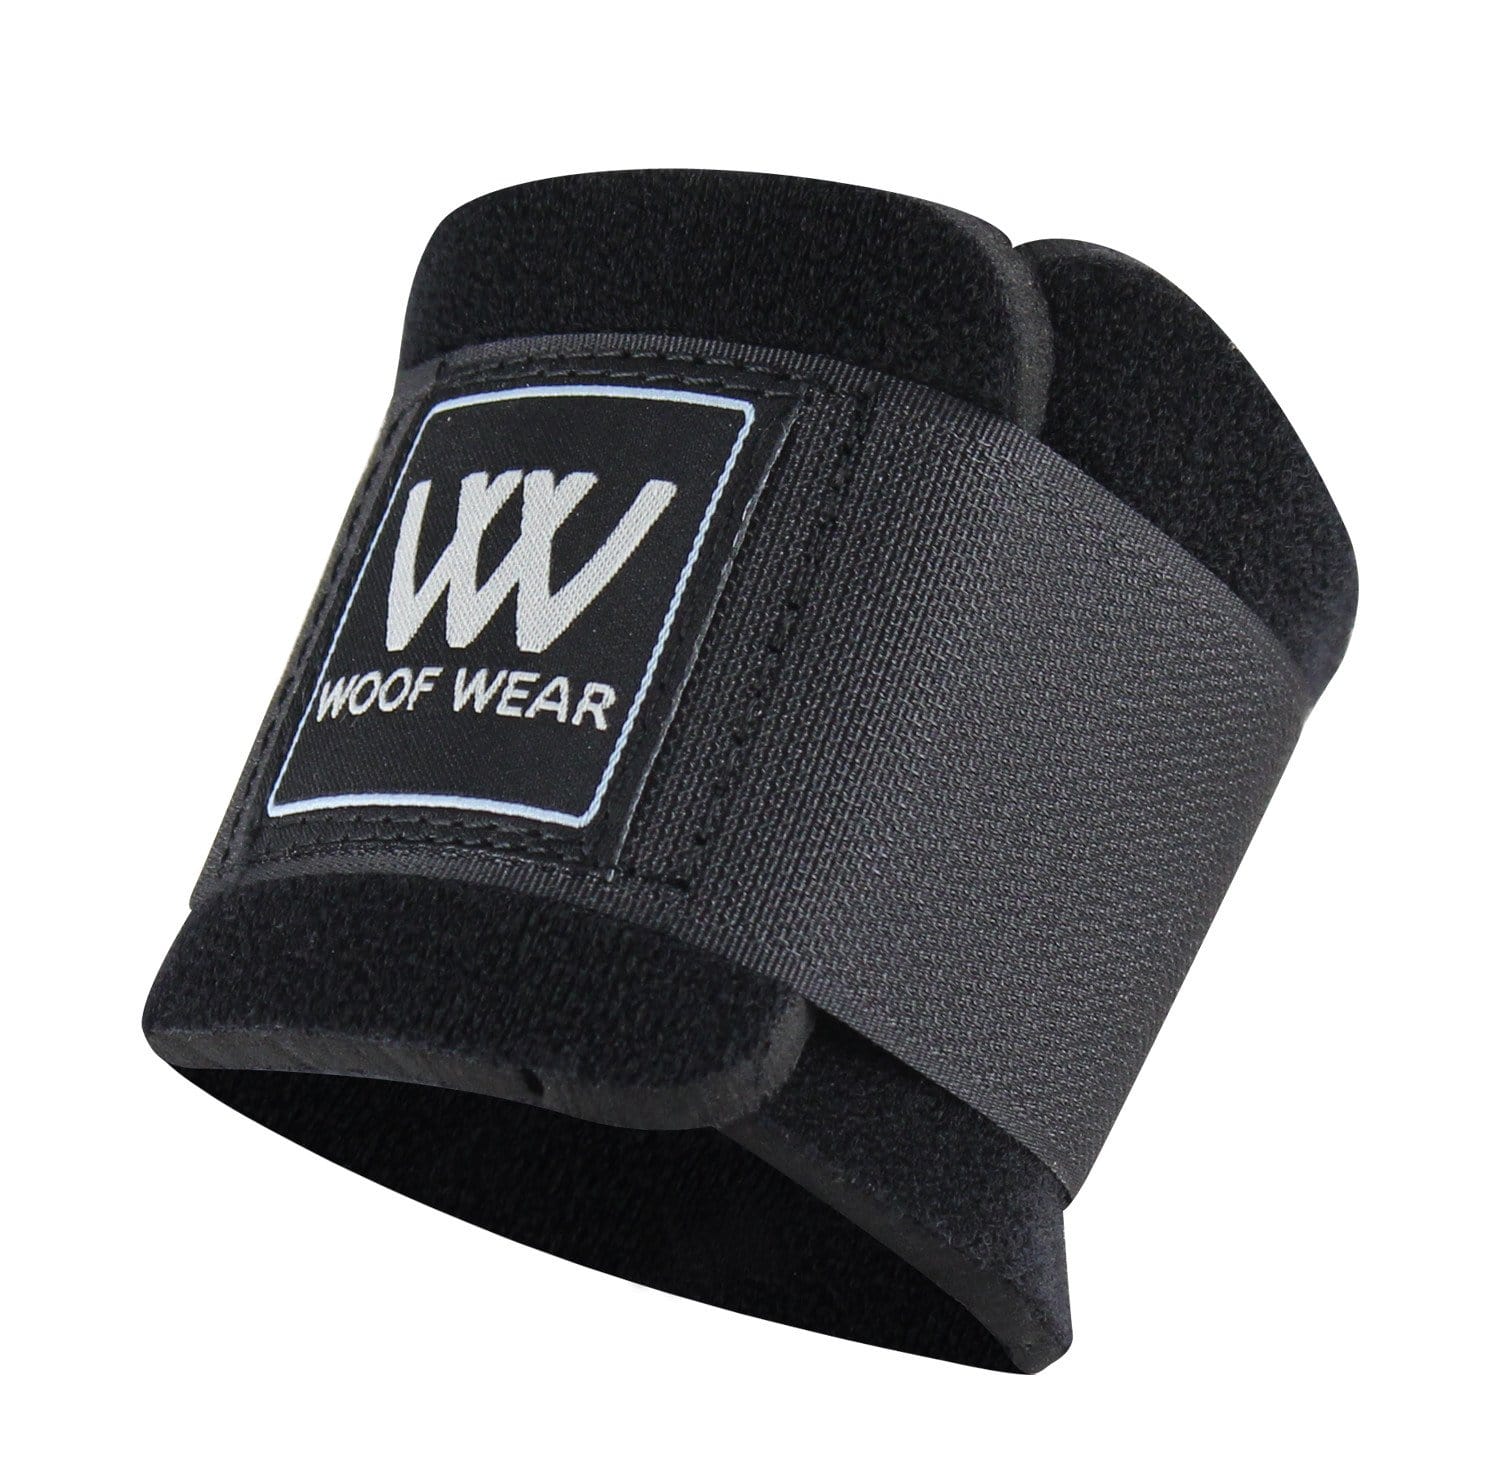 Woof Wear Pastern Wrap in Black WB0014